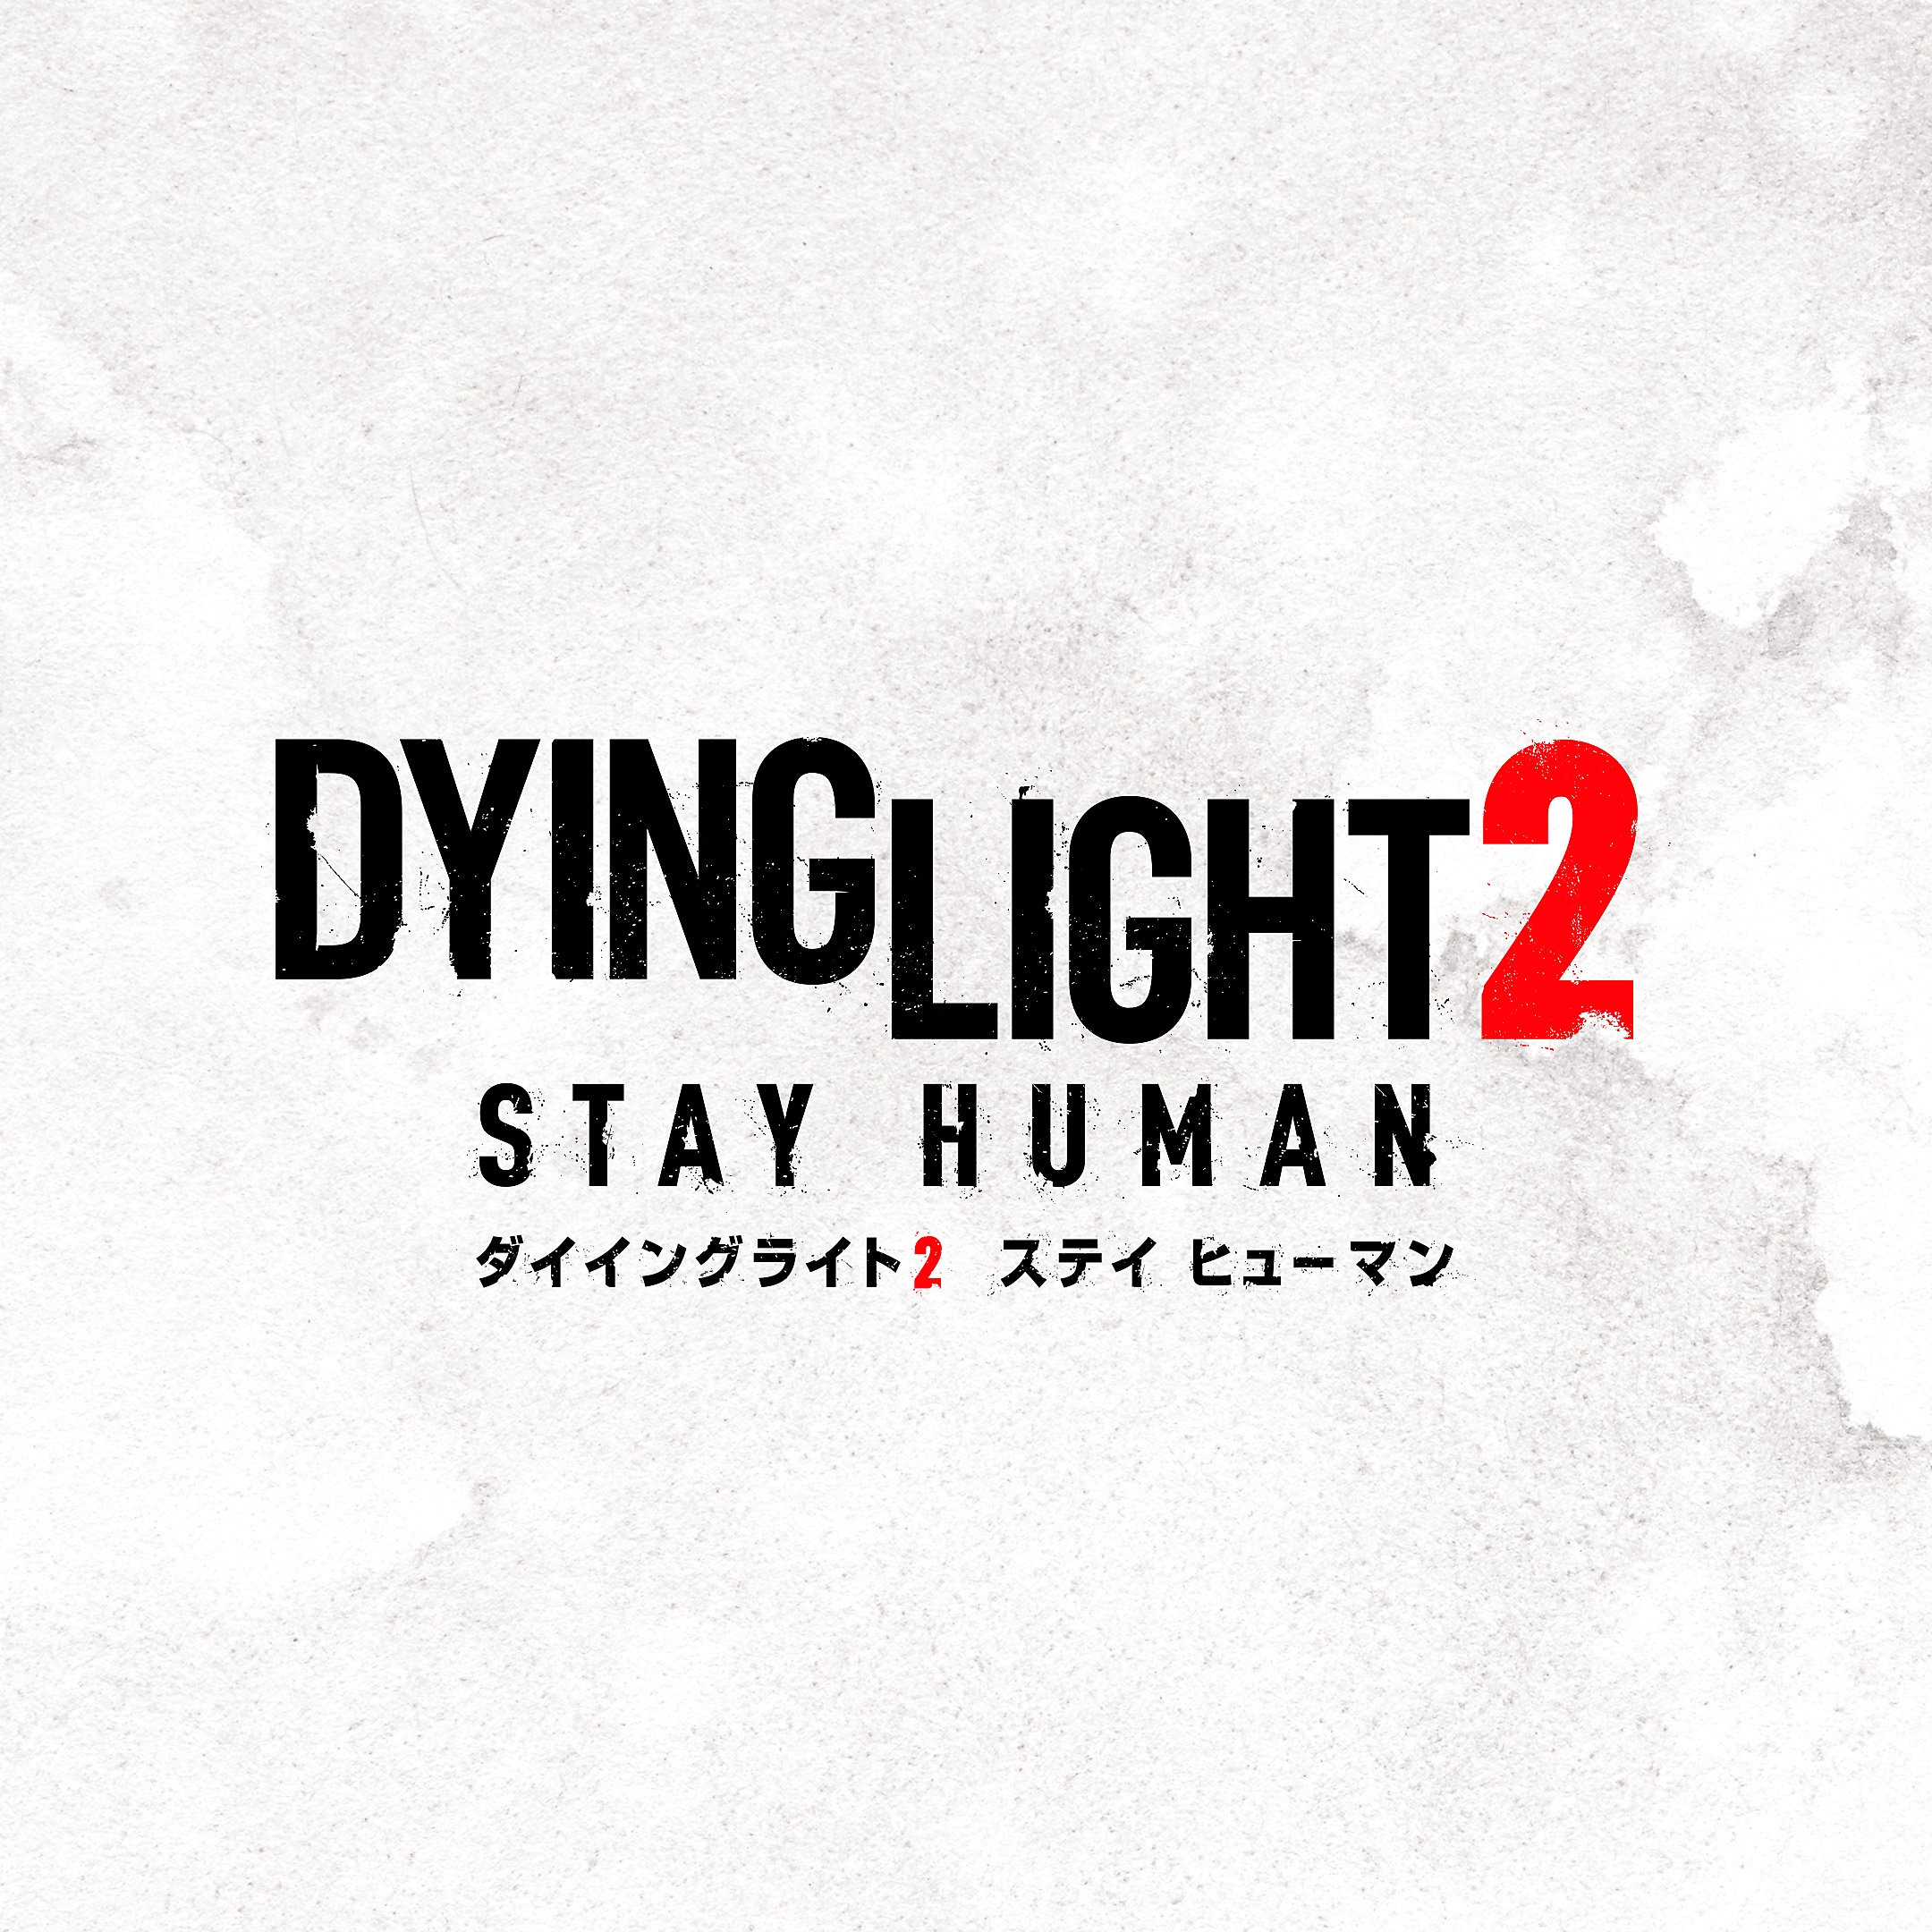 『Dying Light 2』のボックスアート